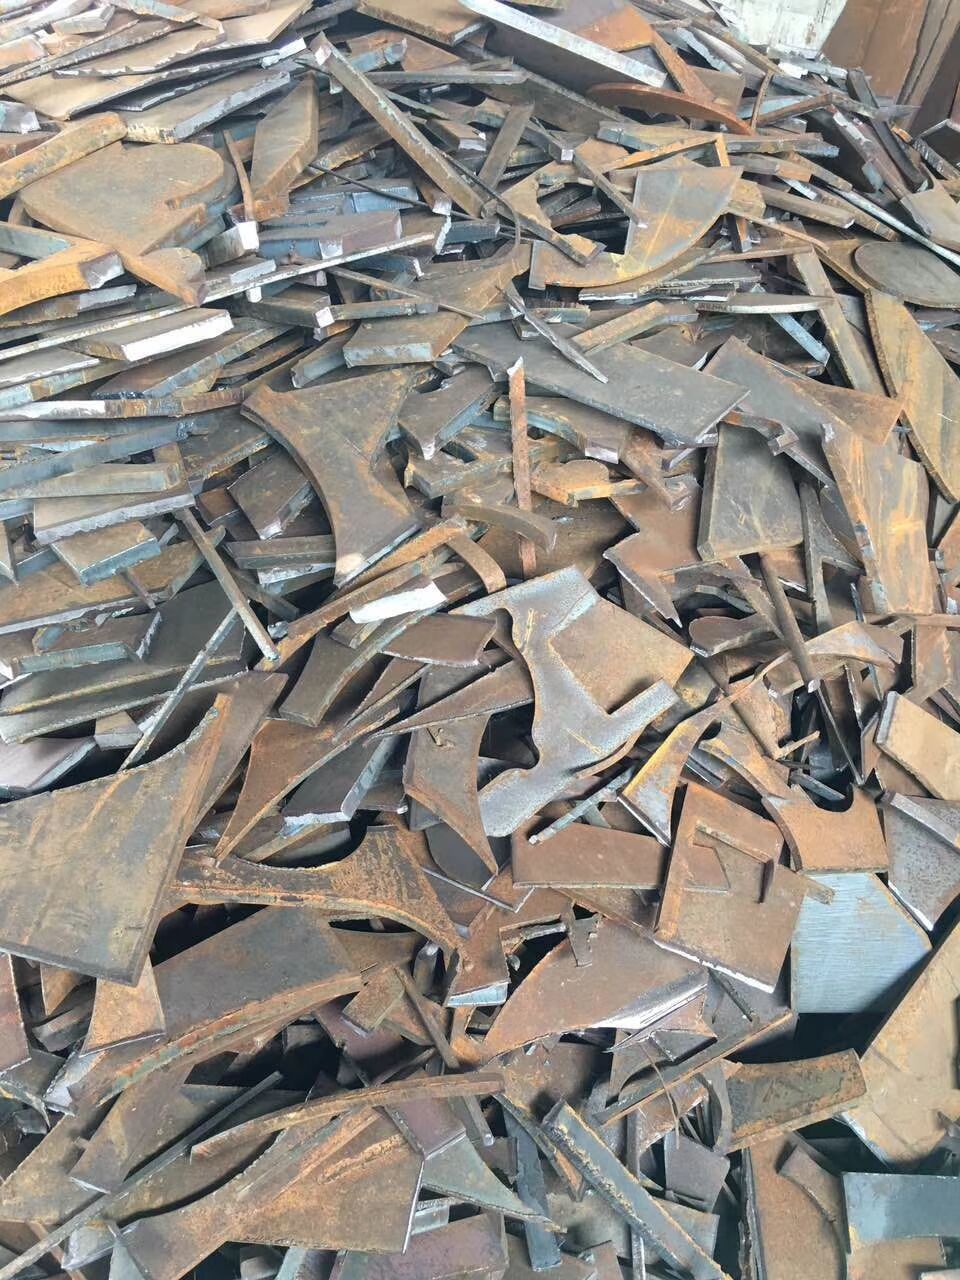 肇庆市回收报废铁模具、肇庆市回收报废铁模具公司